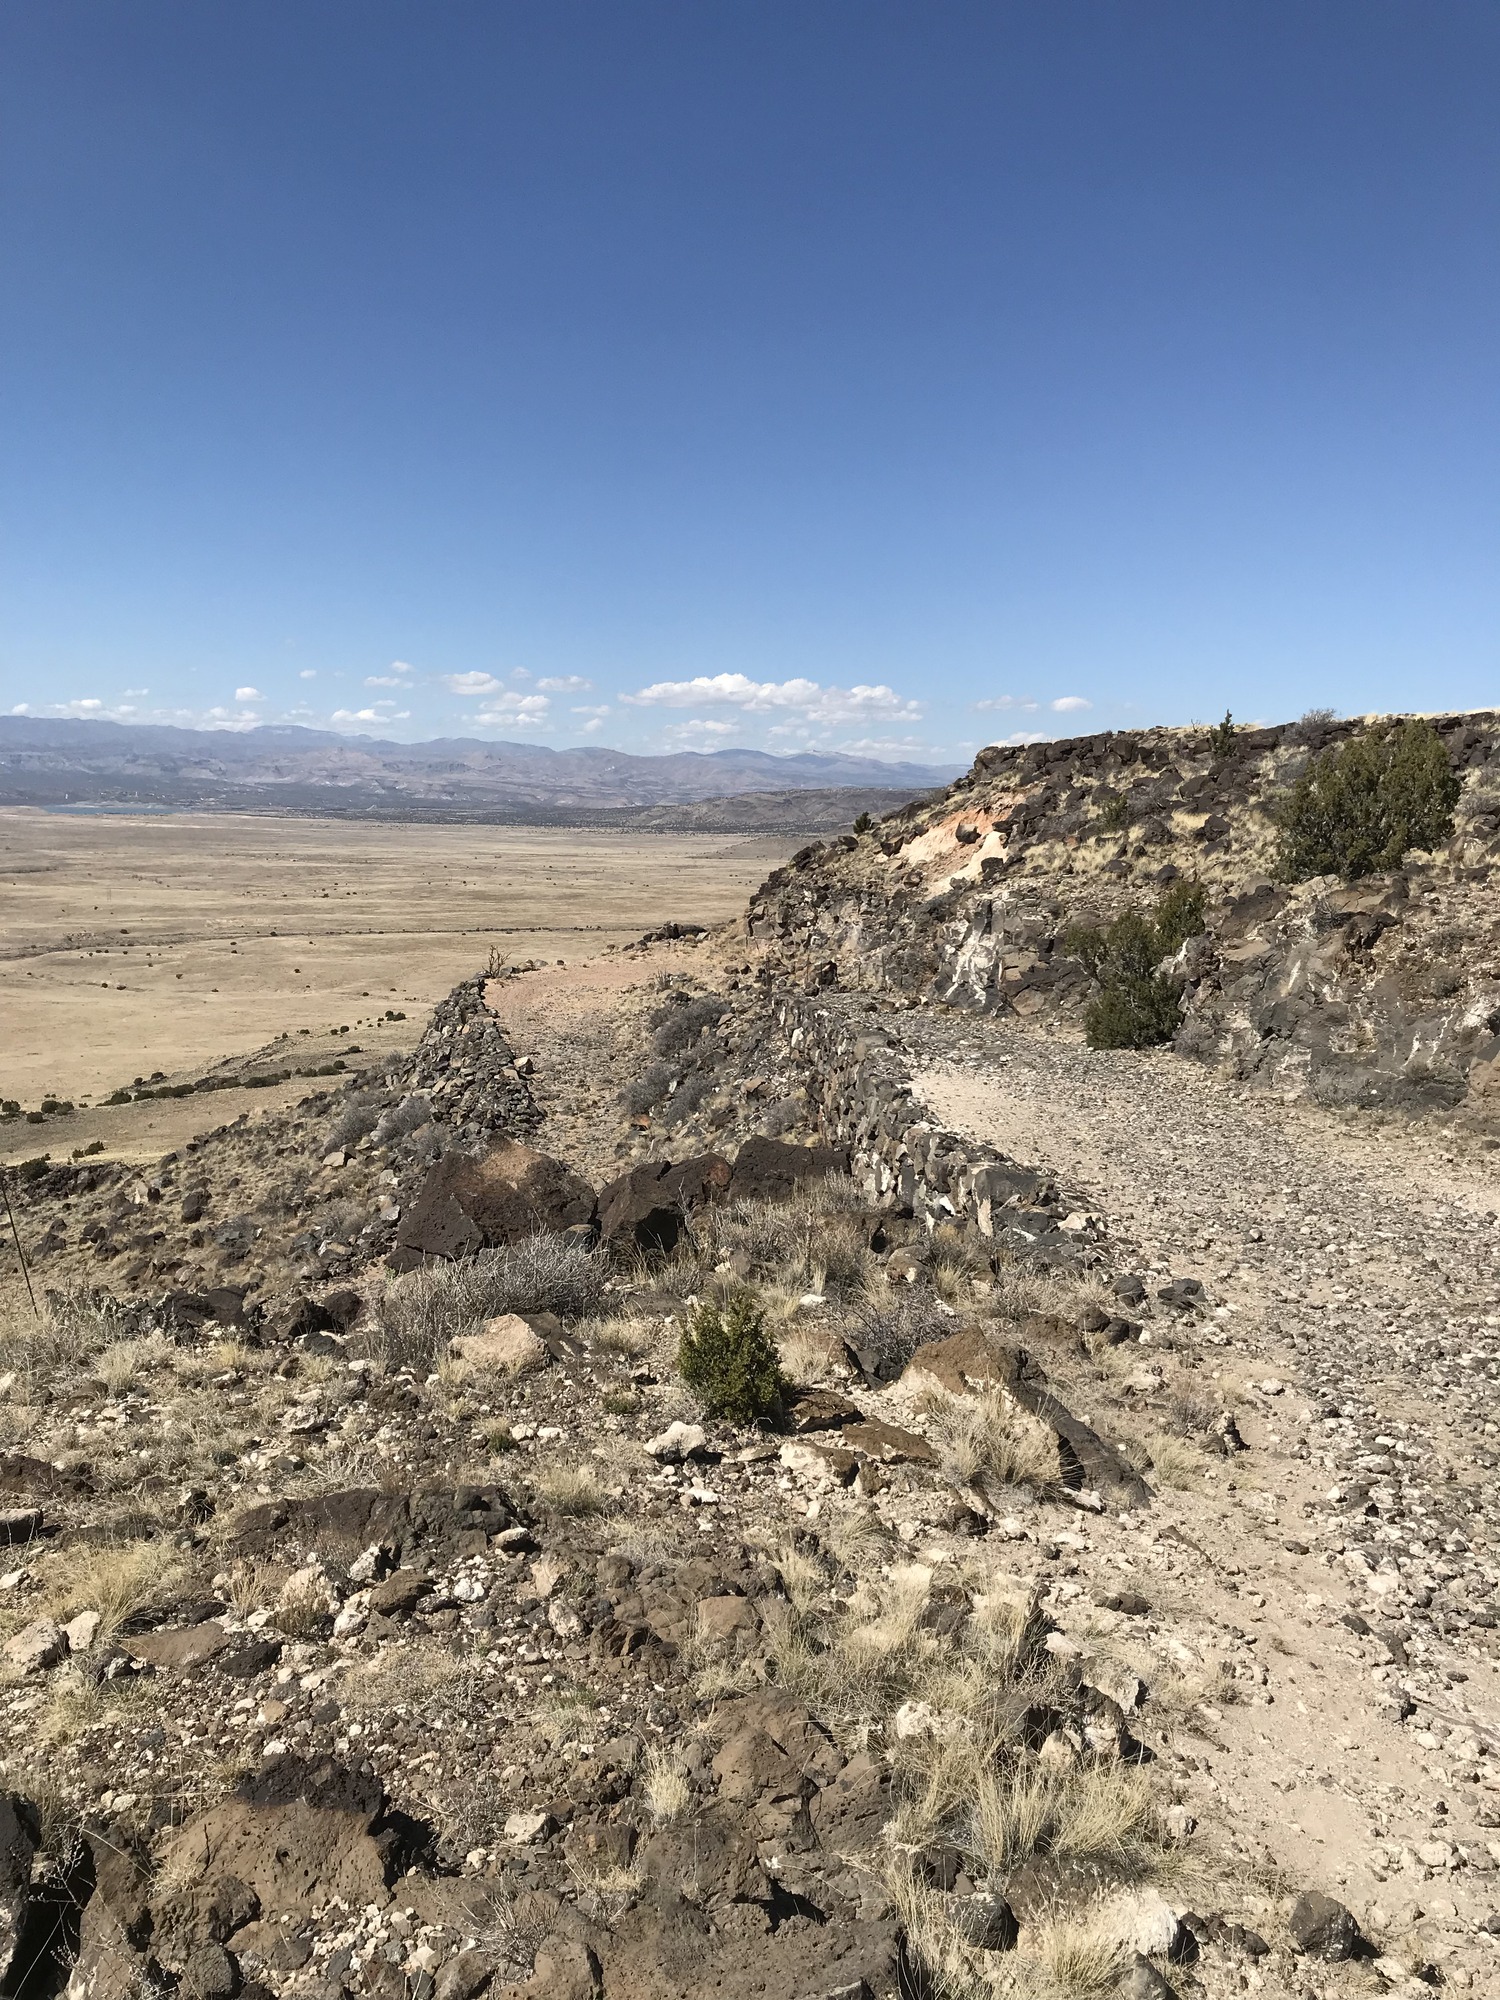 The "Automobile Road" at La Bajada Mesa outside of Santa Fe, NM